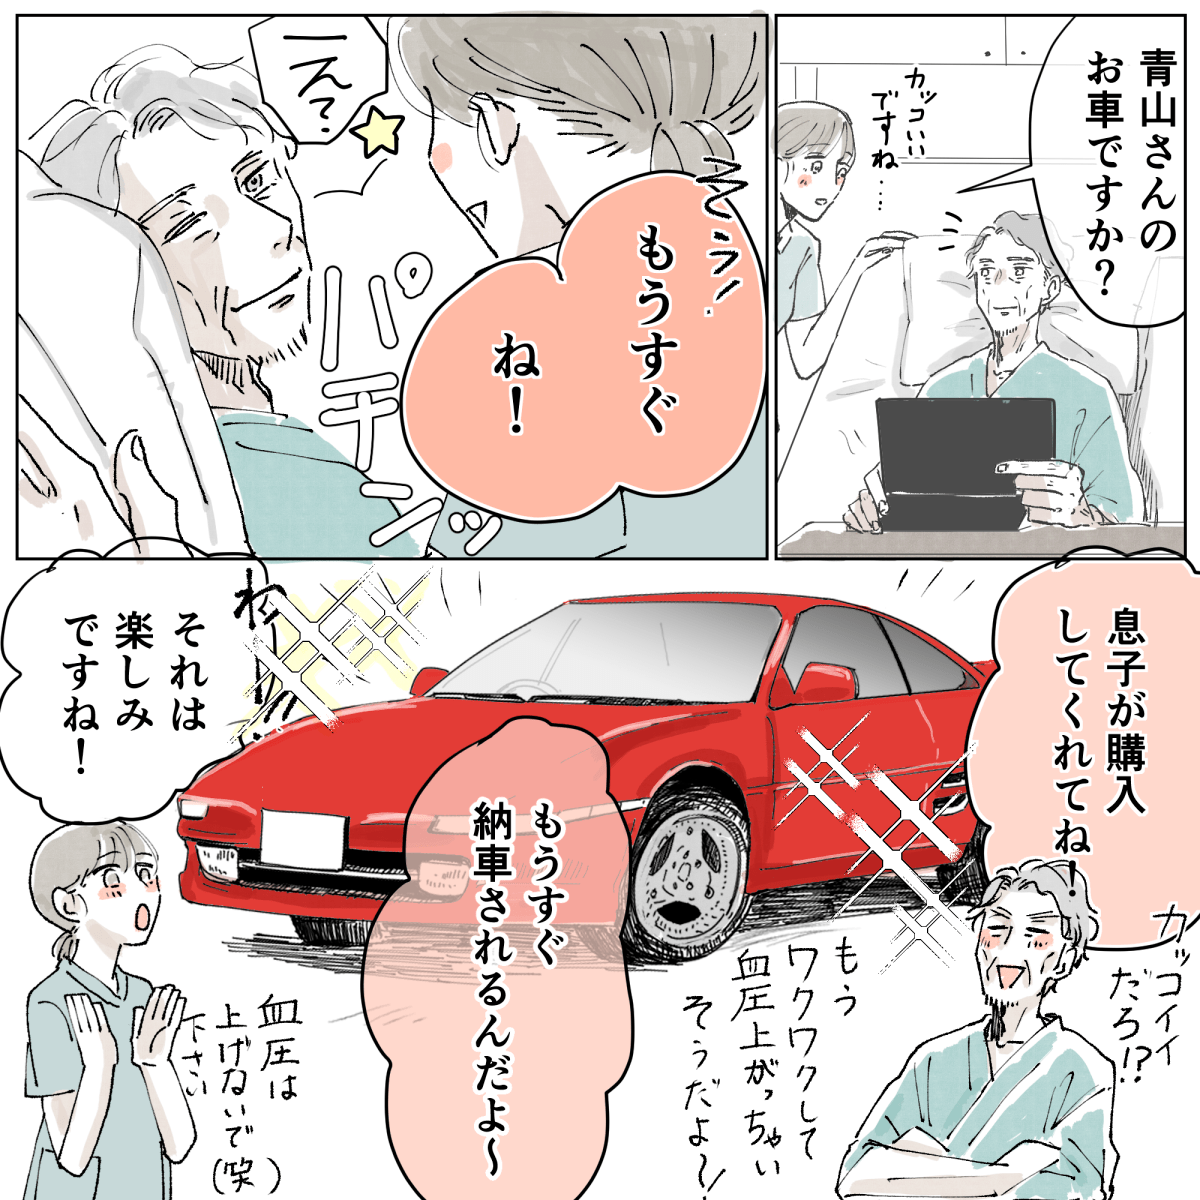 青山さんがパソコンで赤いスポーツカーを見ており、これから納車だと嬉しそうに話す